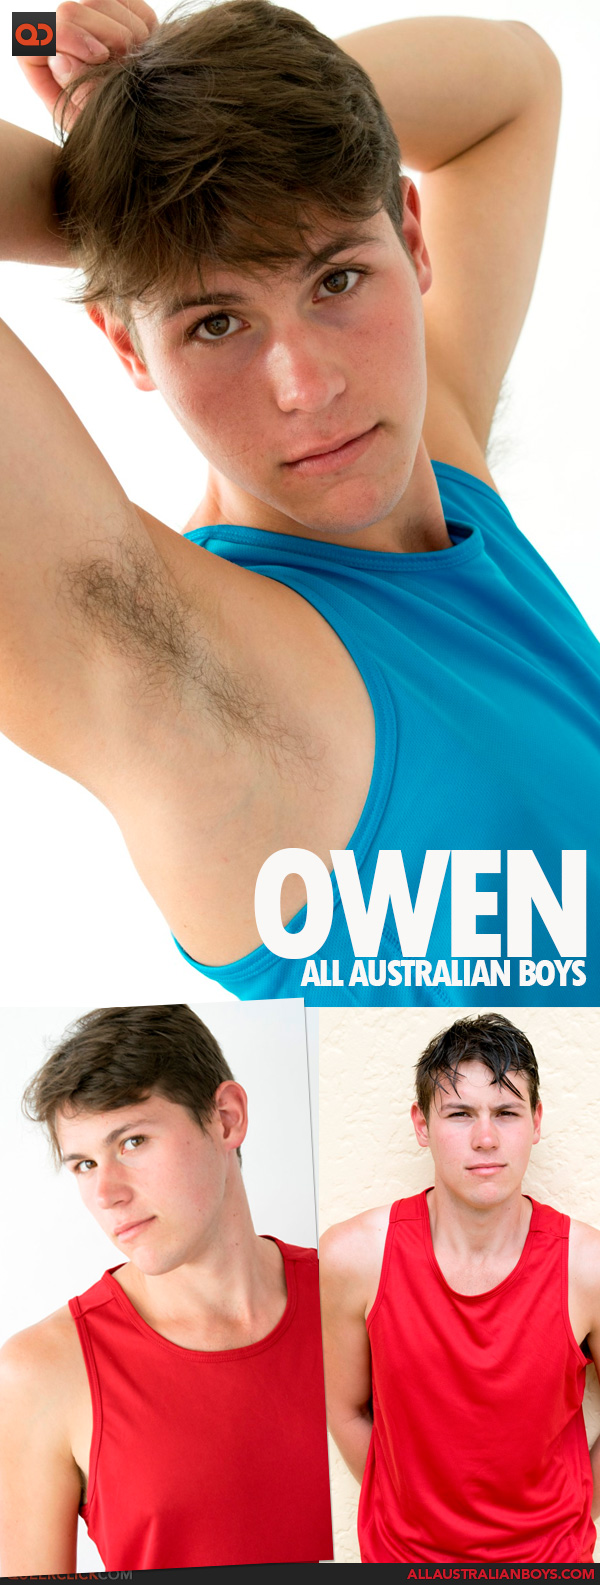 All Australian Boys: Owen